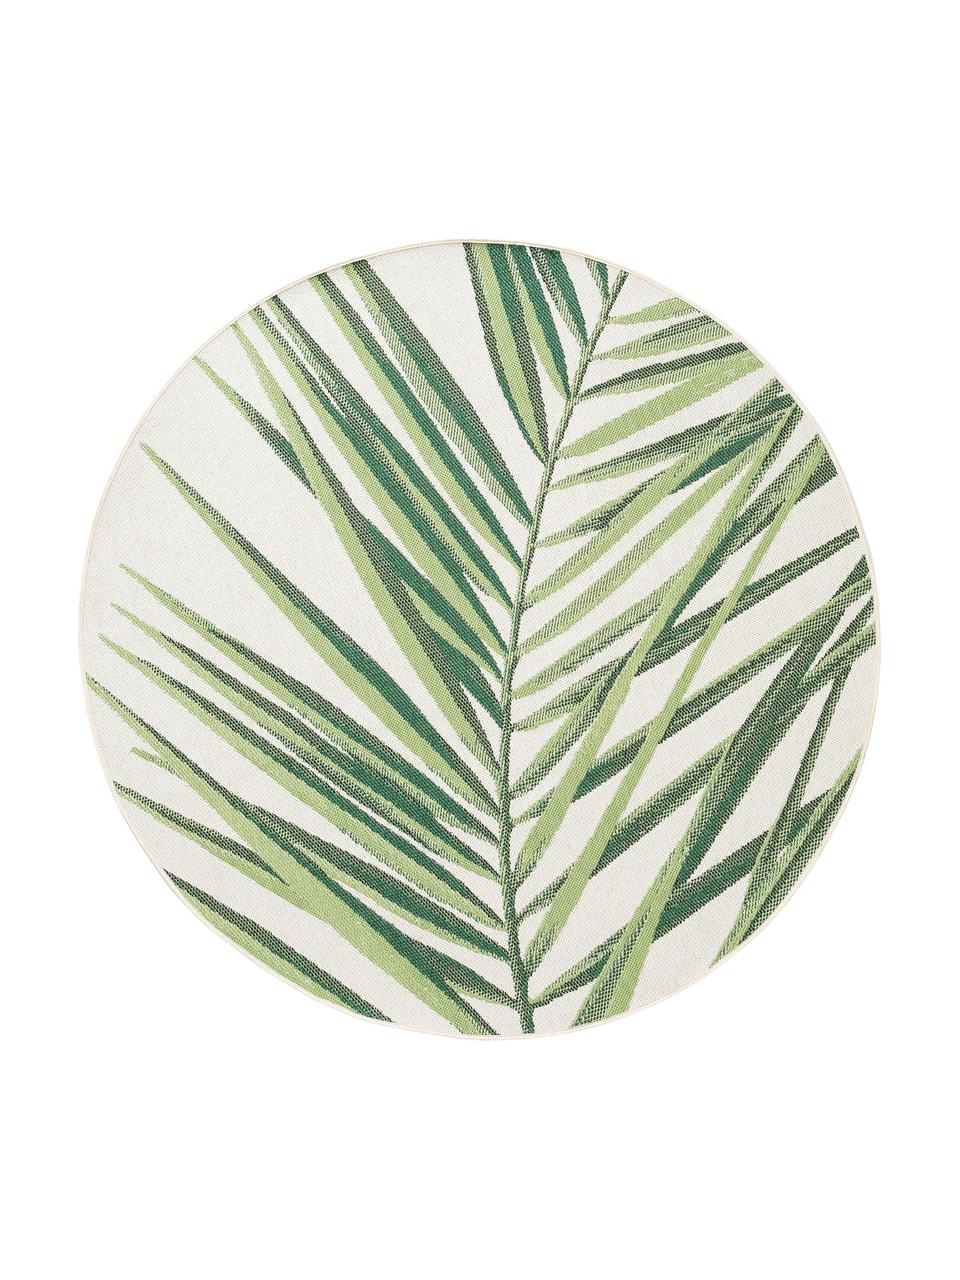 Tappeto rotondo da interno-esterno con motivo foglie Capri, 100% polipropilene, Verde, beige, Ø 160 cm (taglia L)